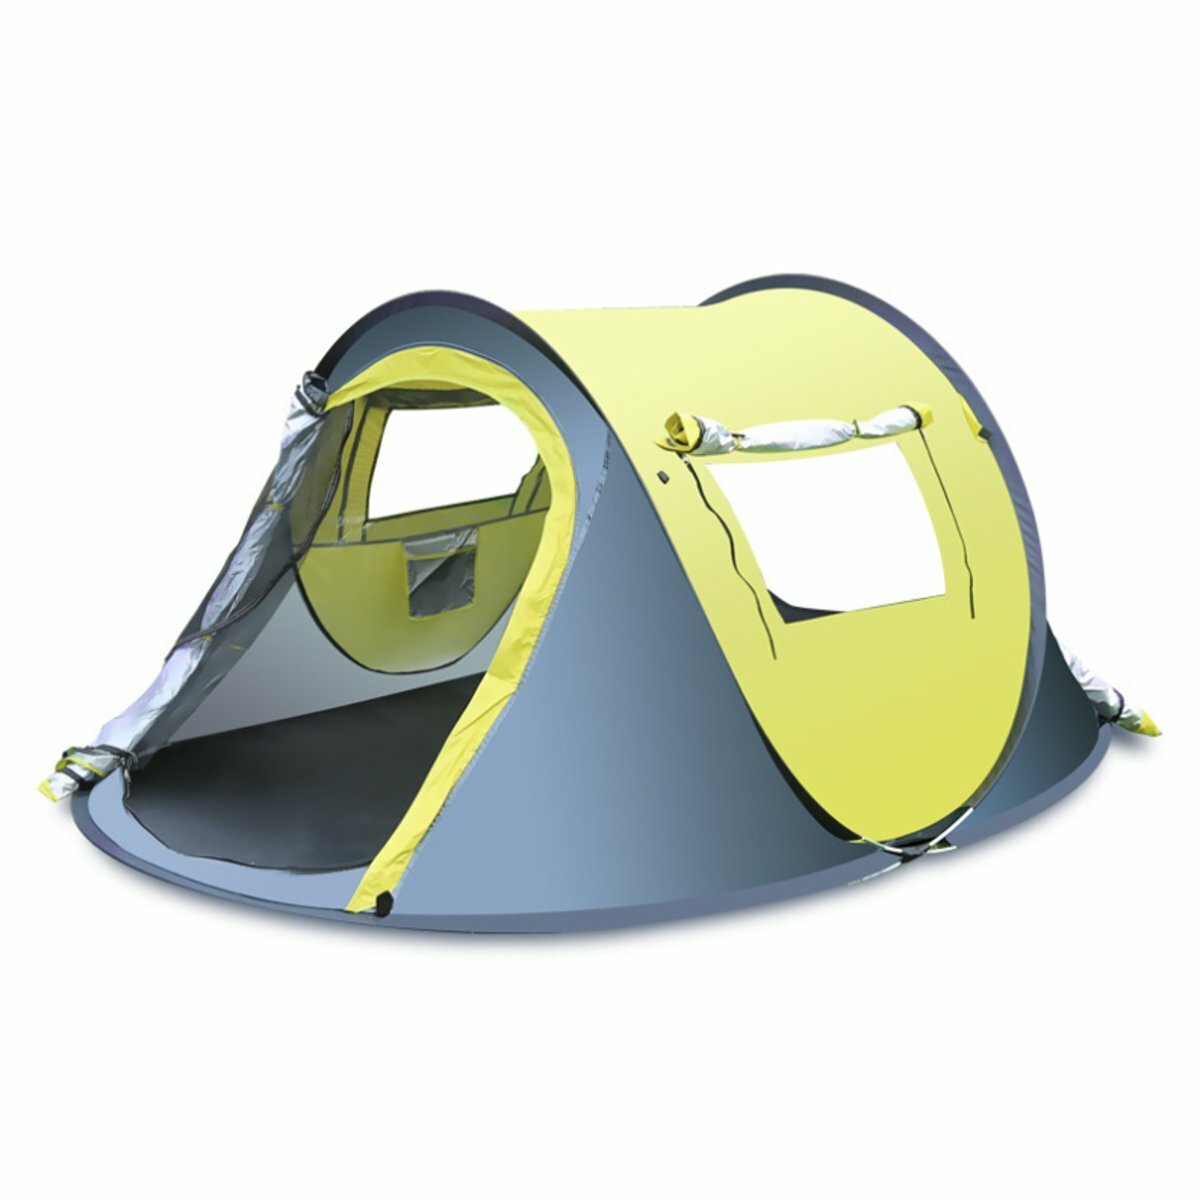 3-4 Personen Wandern Campingzelt Wasserdichtes automatisches Pop-Up-Zelt Quick Shelter